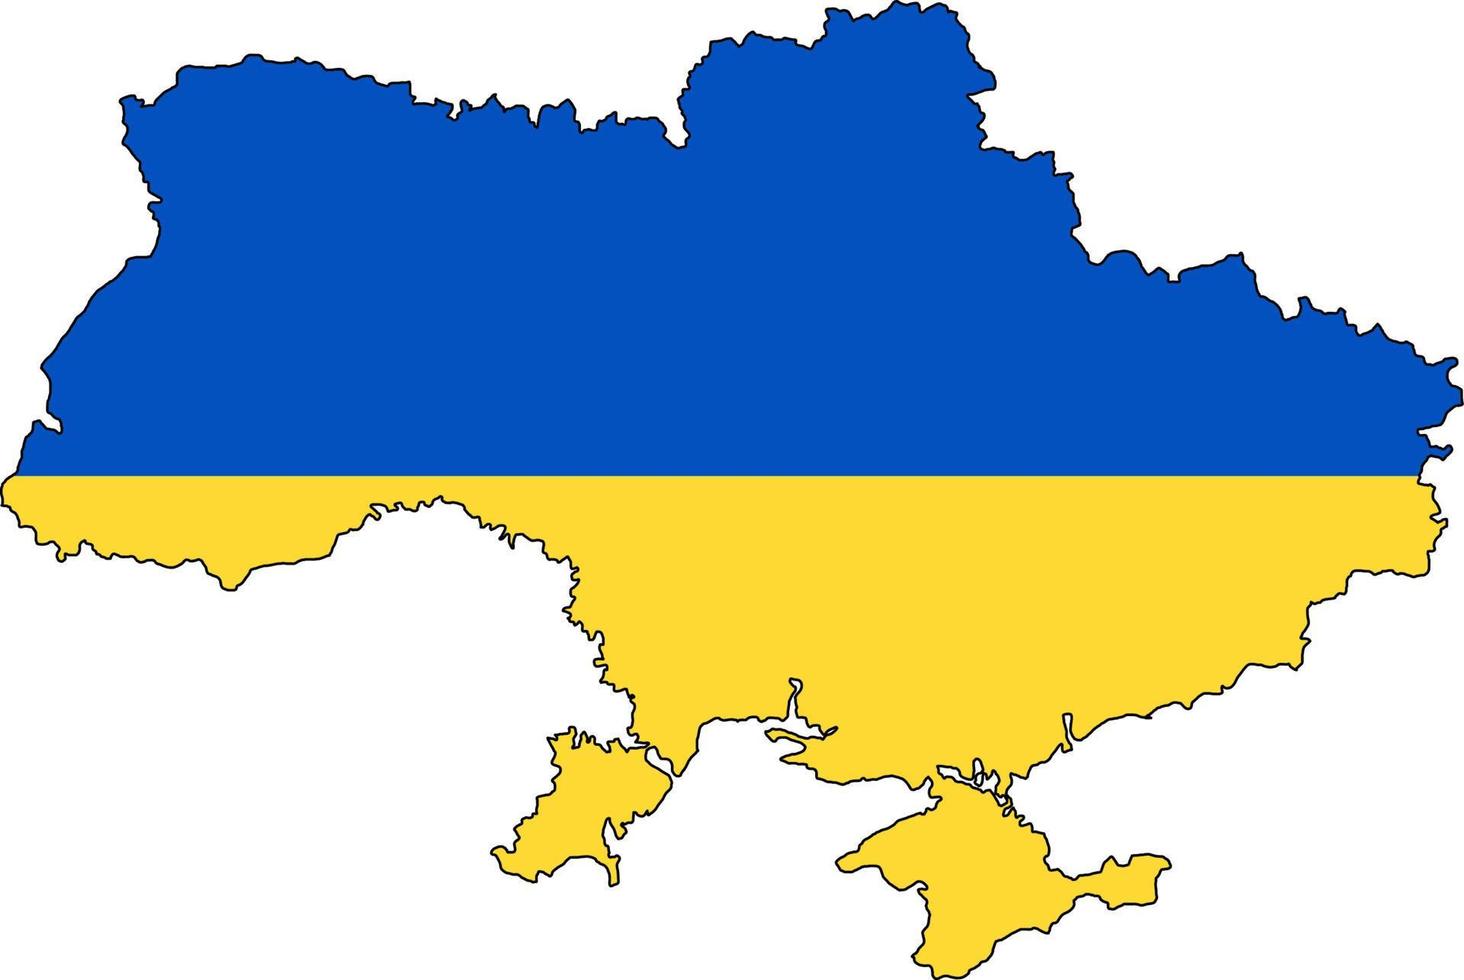 mapa do país da ucrânia. cores da bandeira ucraniana. território faz fronteira com a Crimeia. ilustração vetorial de azul e amarelo. vetor